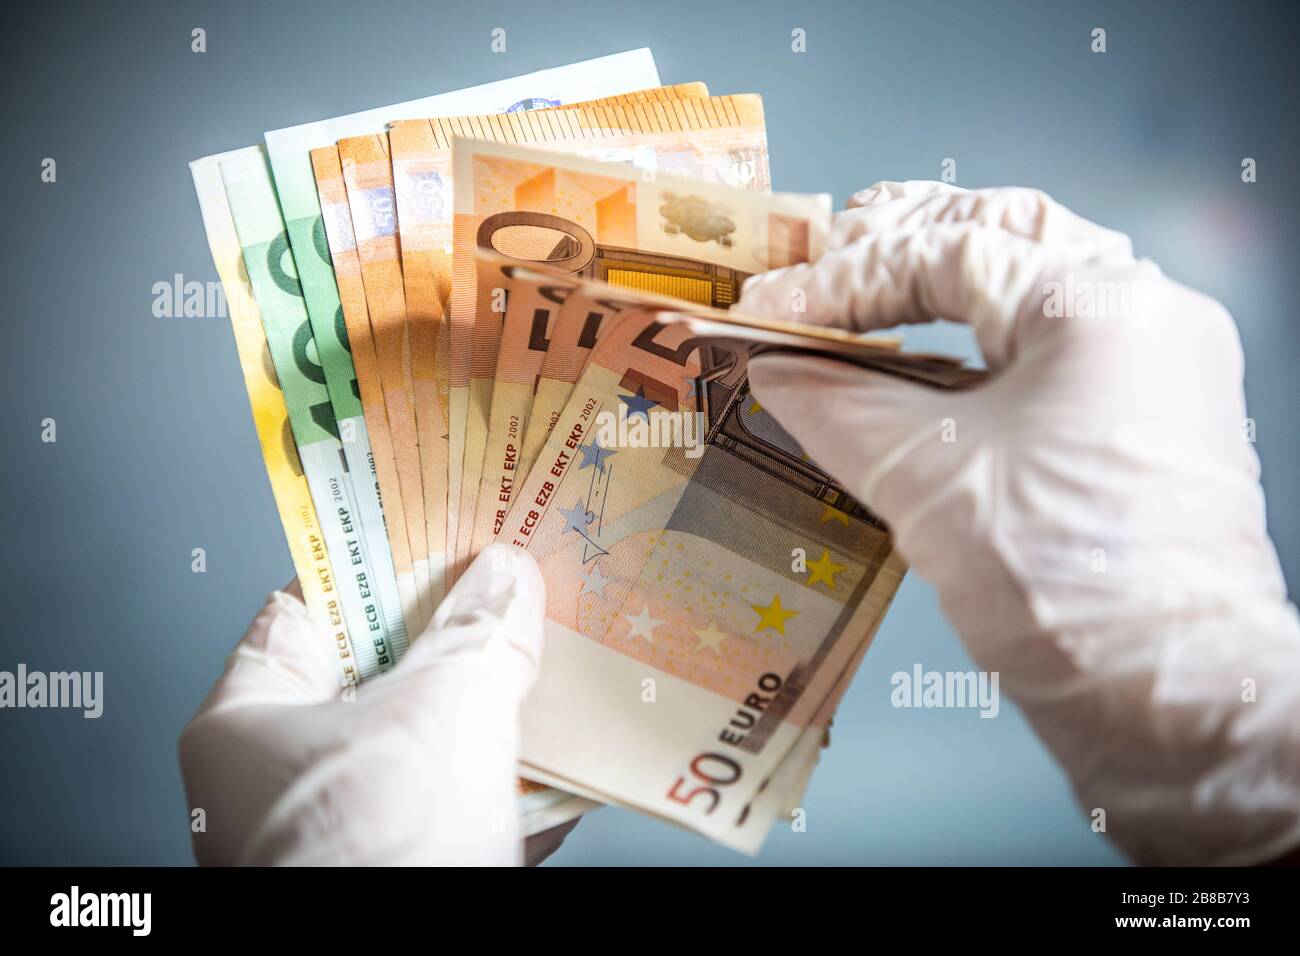 Mann, der Euro-Währungsrechnungen mit Händen hält, die chirurgische Handschuhe tragen, um sich vor Bakterien und Viren zu schützen. Stockfoto